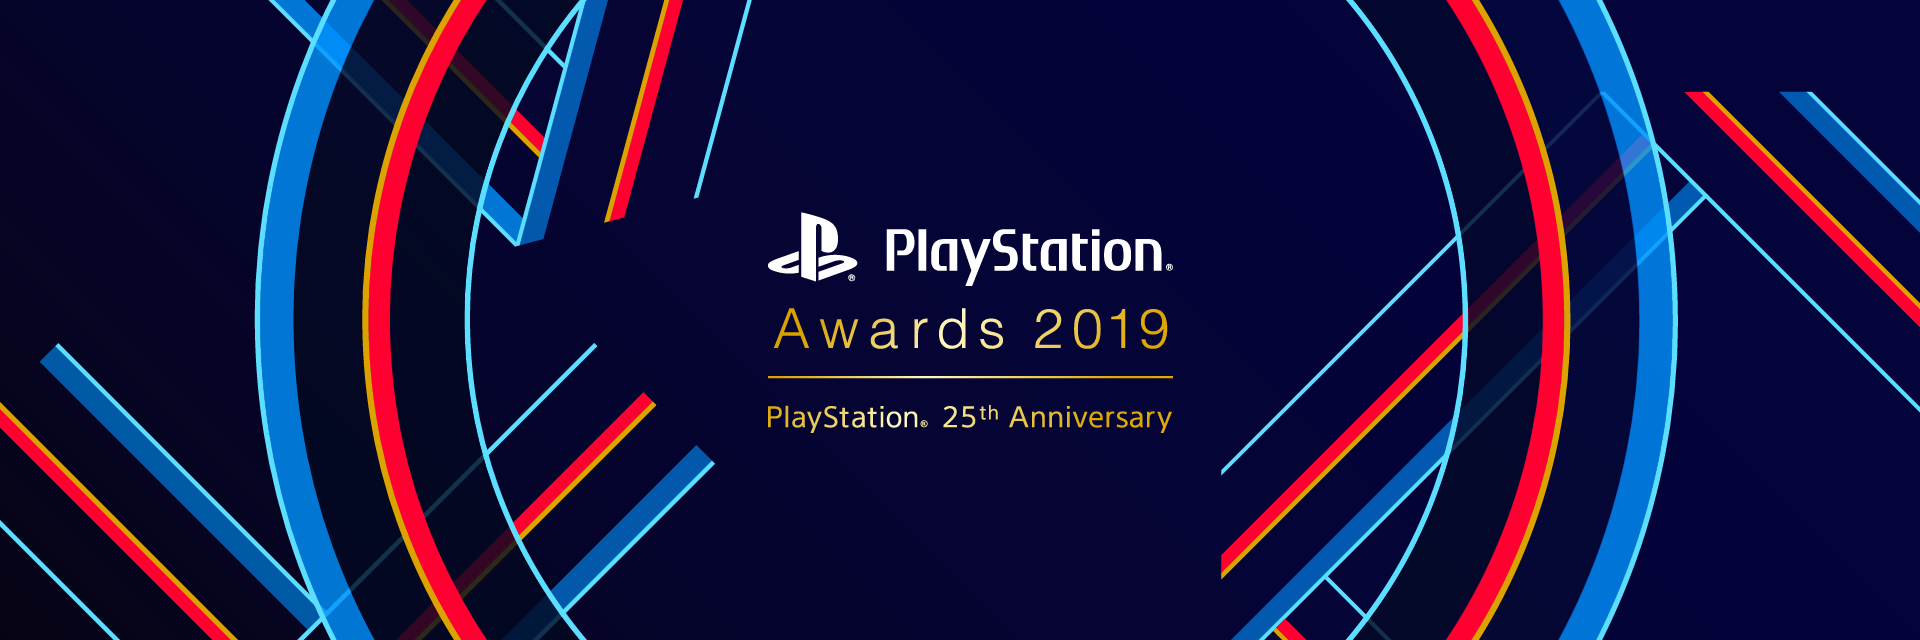 GSE代理/發行作品霸榜PS Awards最佳獨立遊戲大獎